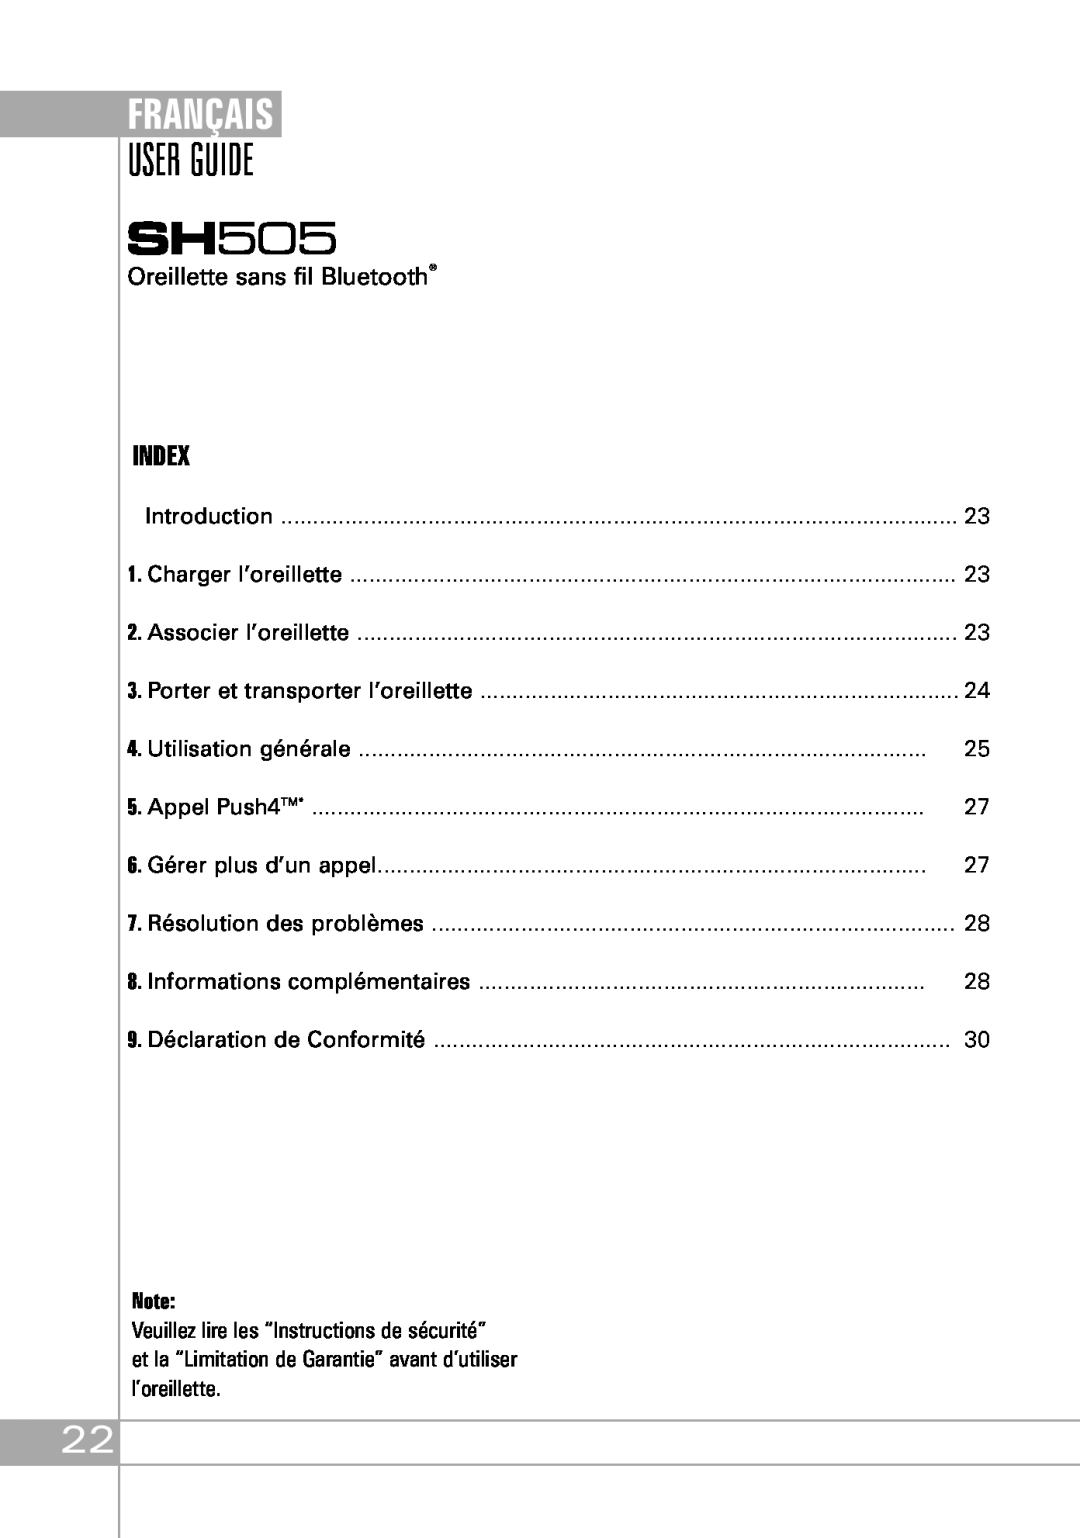 Southwing SH505 manual Français, Oreillette sans fil Bluetooth, User Guide, Index 